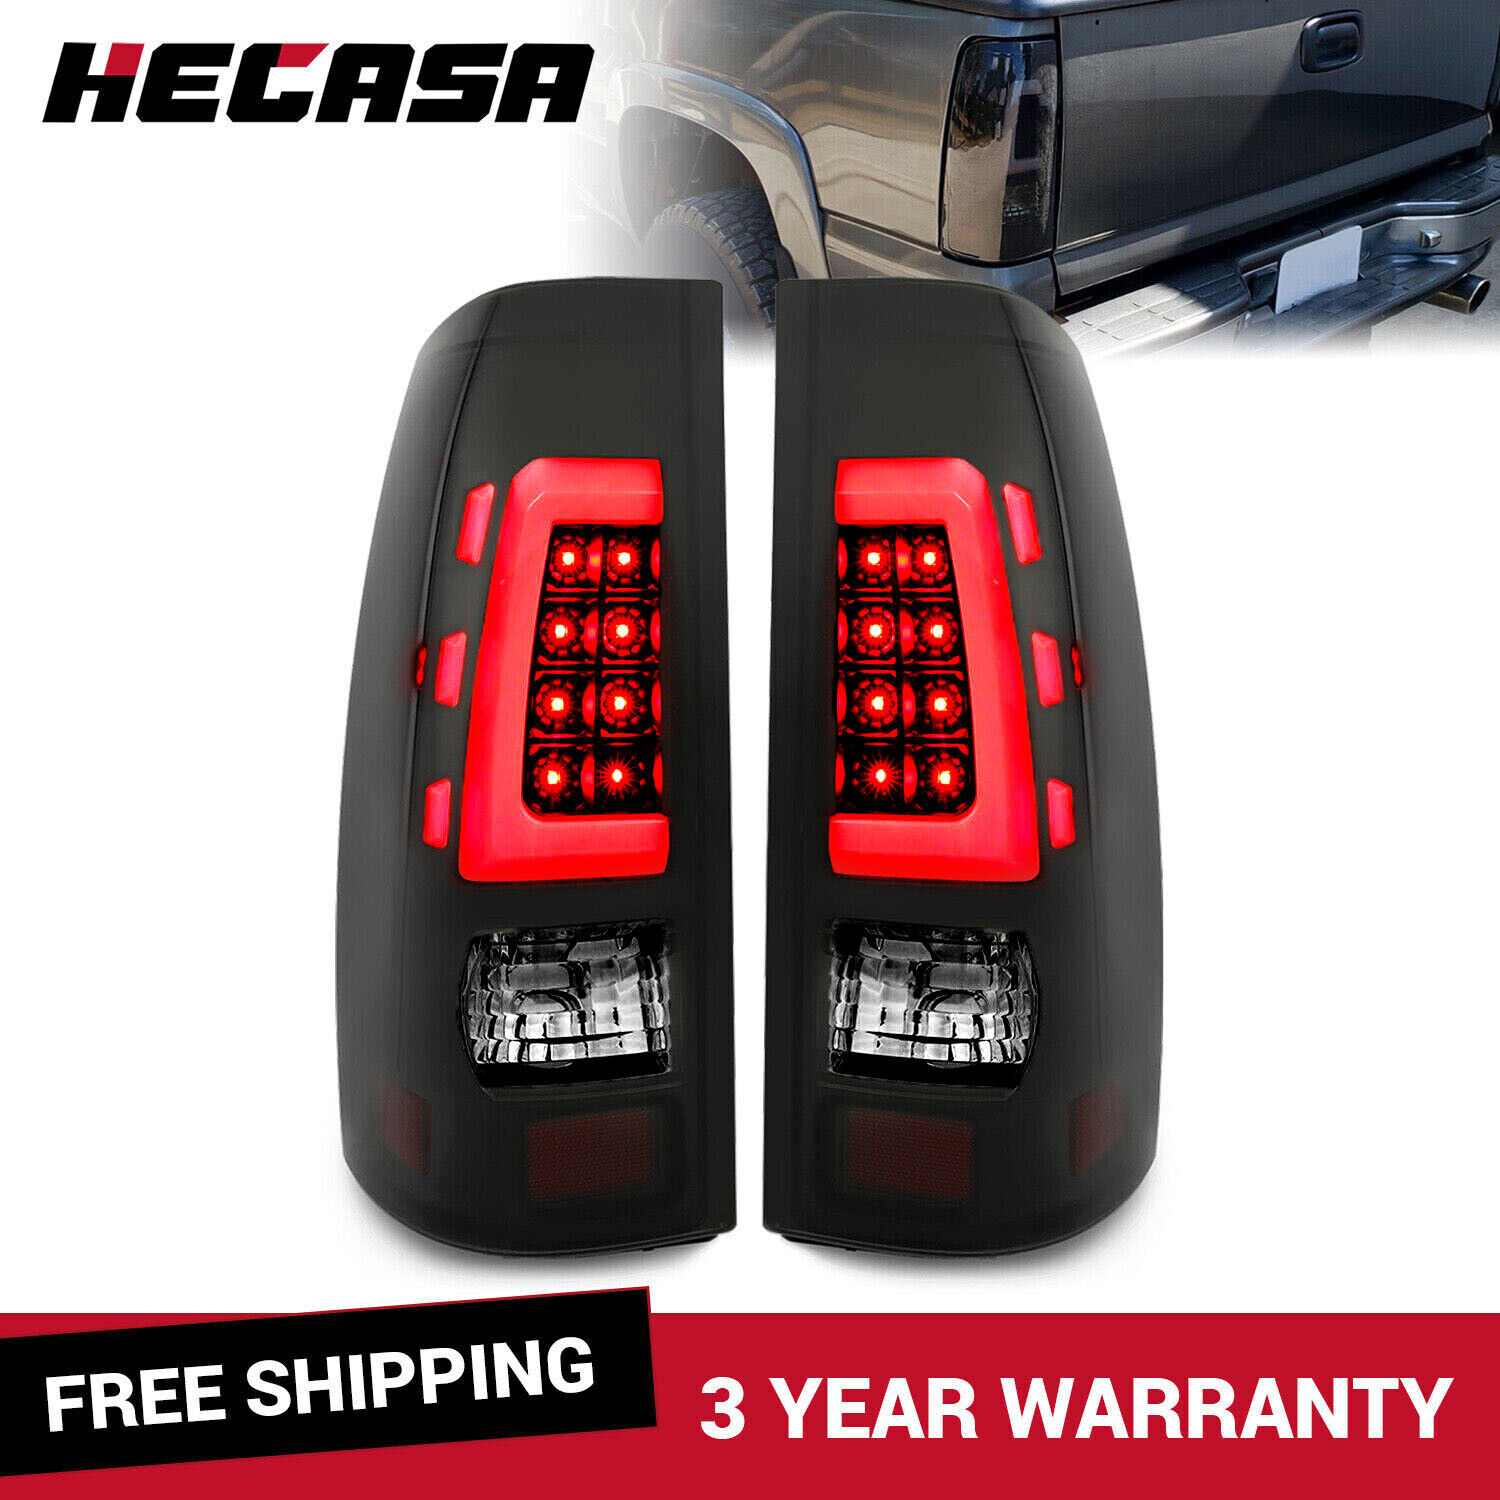 HECASA LED Tail Lights For 99-06 Chevy Silverado 99-02 GMC Sierra 1500 2500 3500